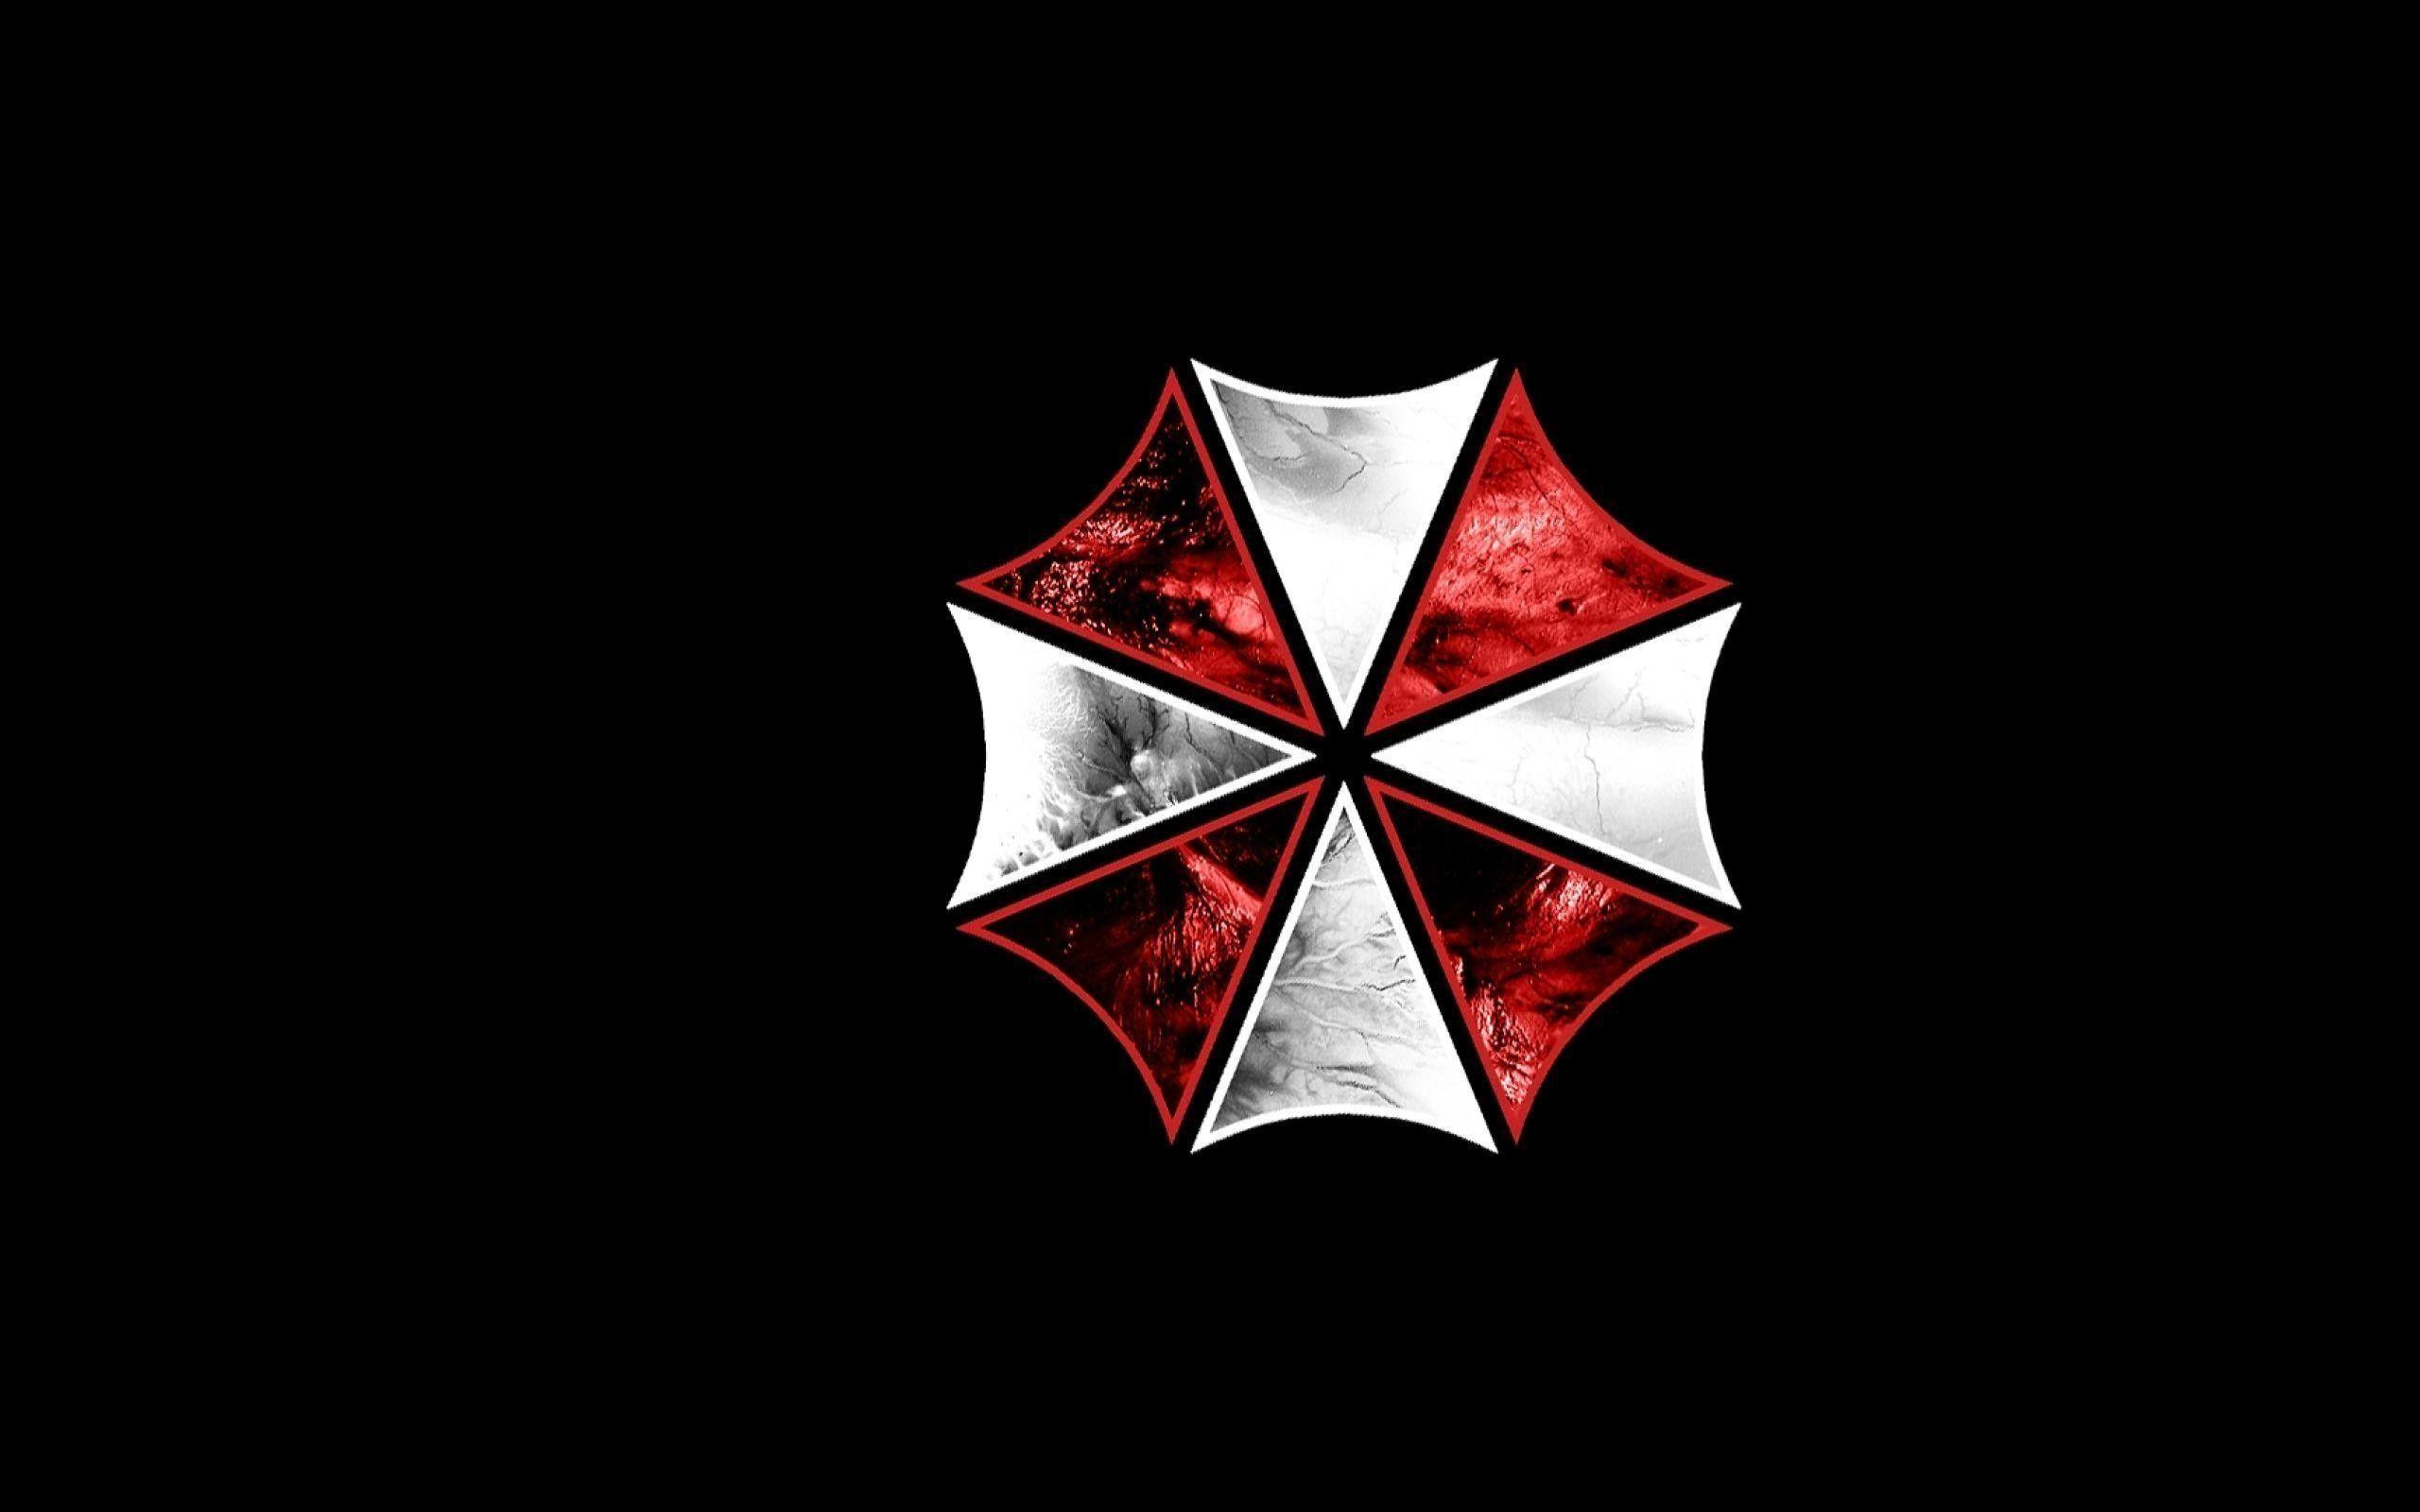 Umbrella Corporation Wallpaper, The Umbrella Corporation is…